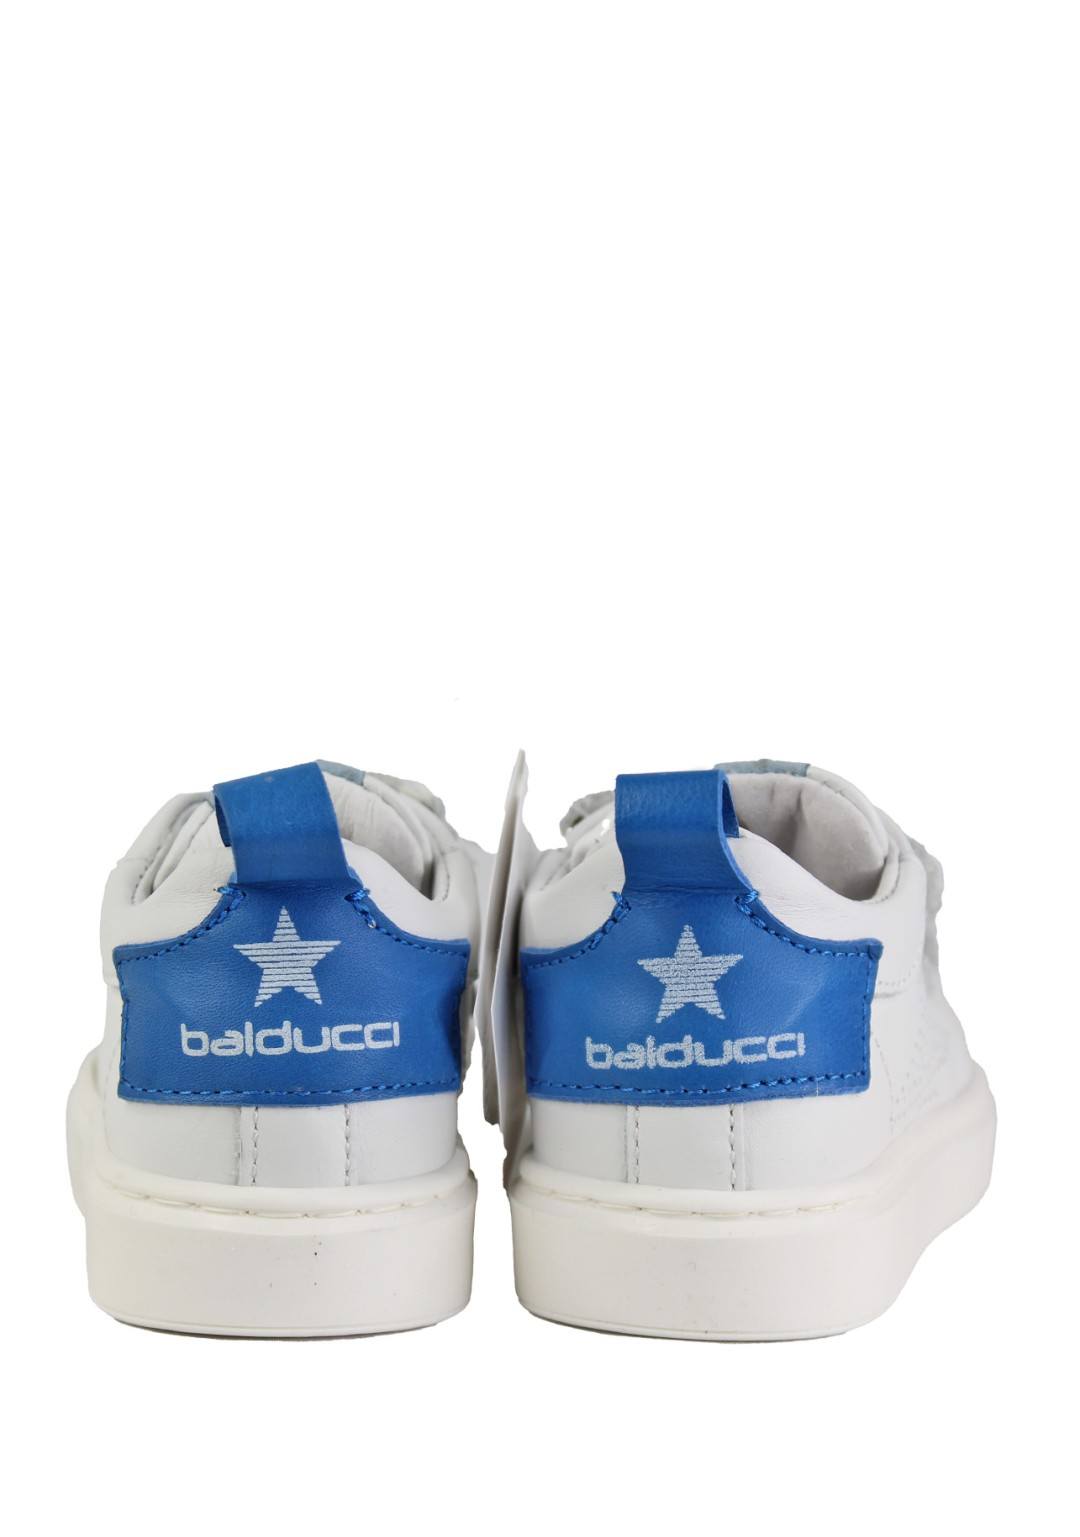 Balducci - Stella Rip.Blu - Bimbo - CSP5705J